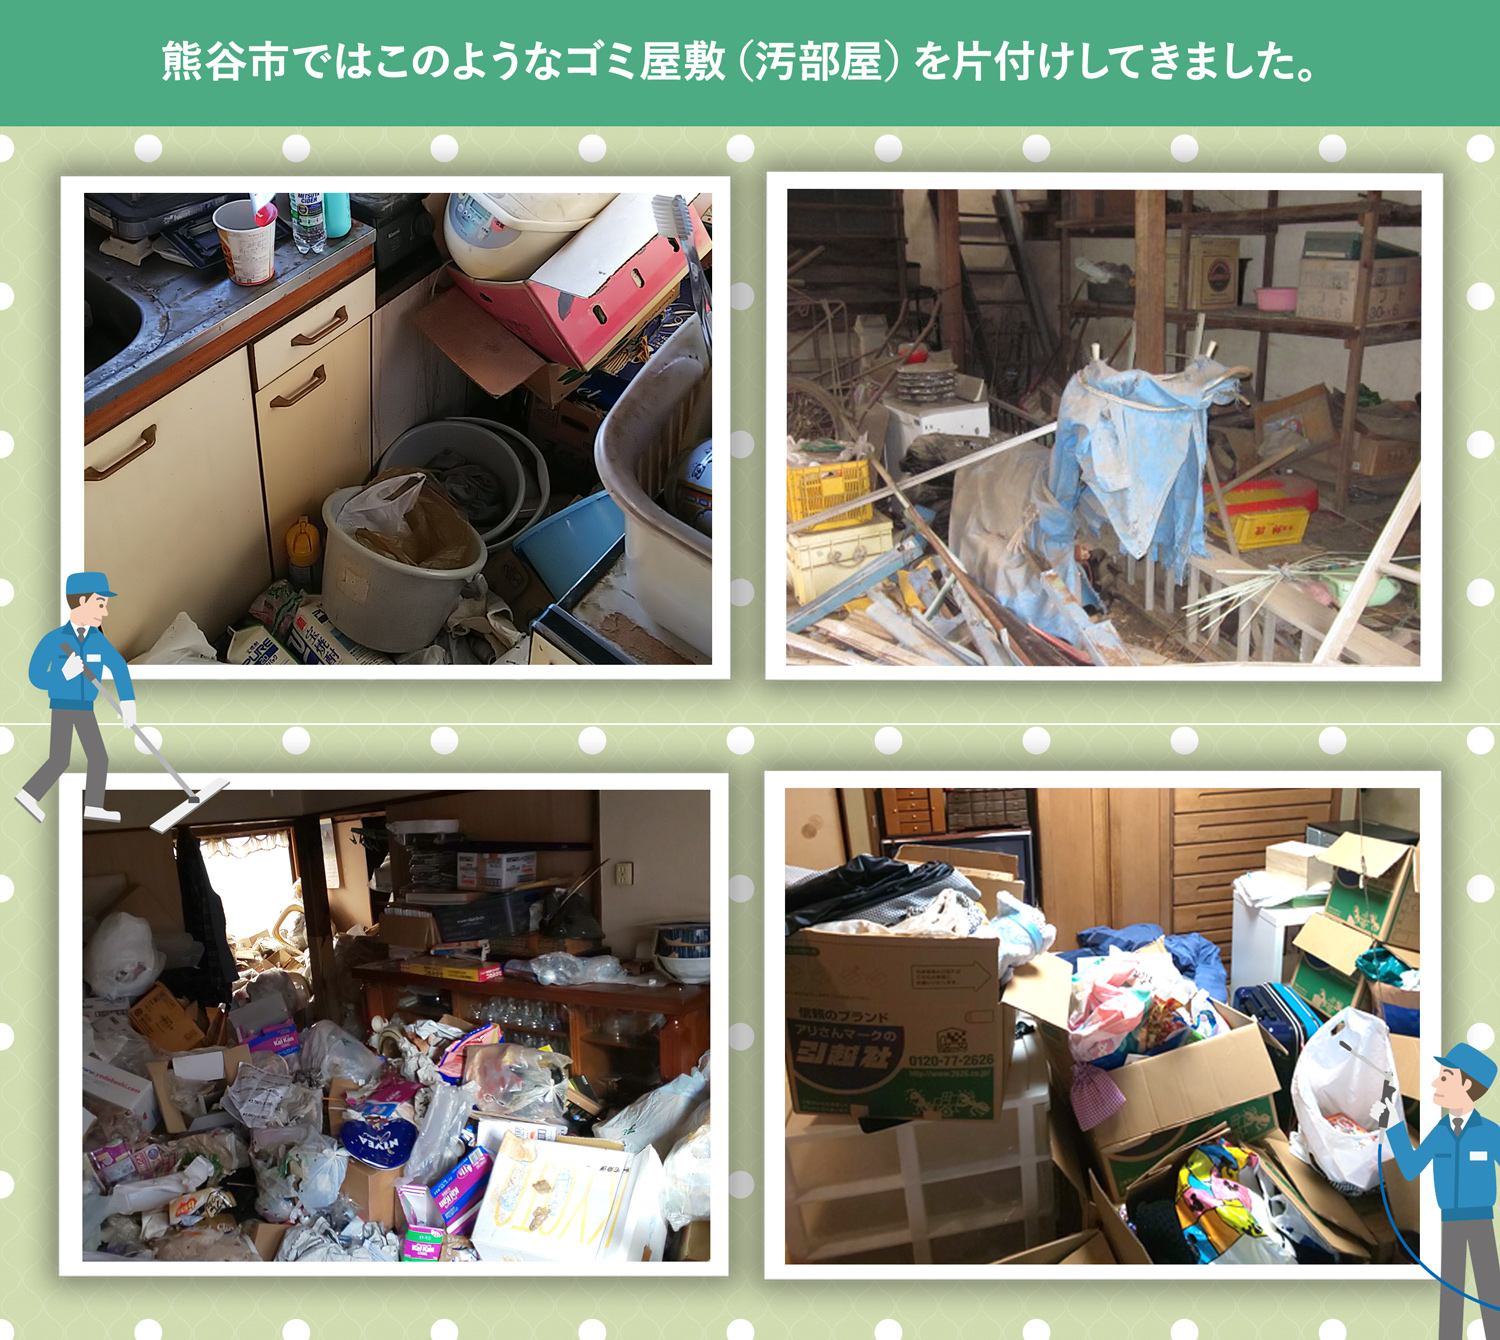 熊谷市で行ったで行ったごみ屋敷・汚部屋の片付けの一例